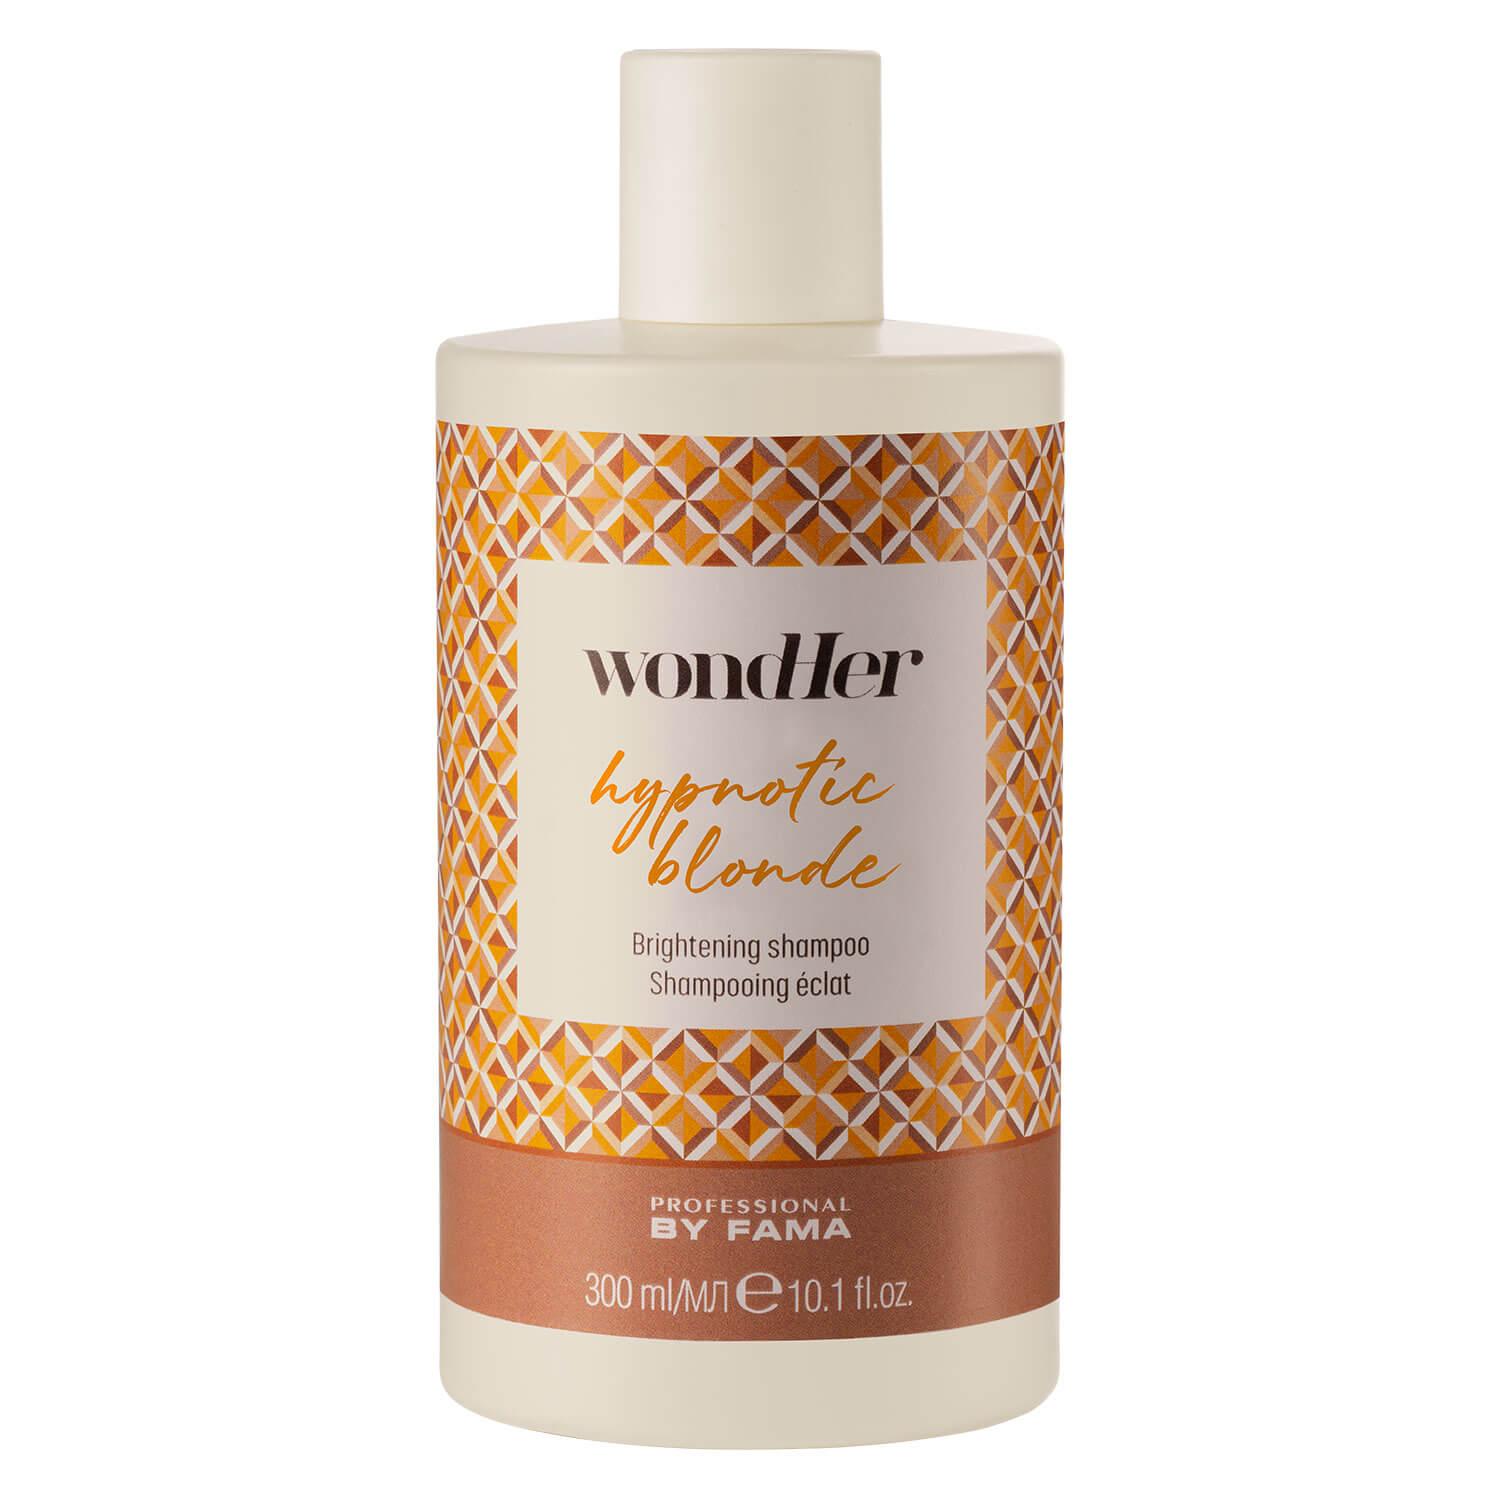 wondHer - Hypnotic Blonde Brightening Shampoo